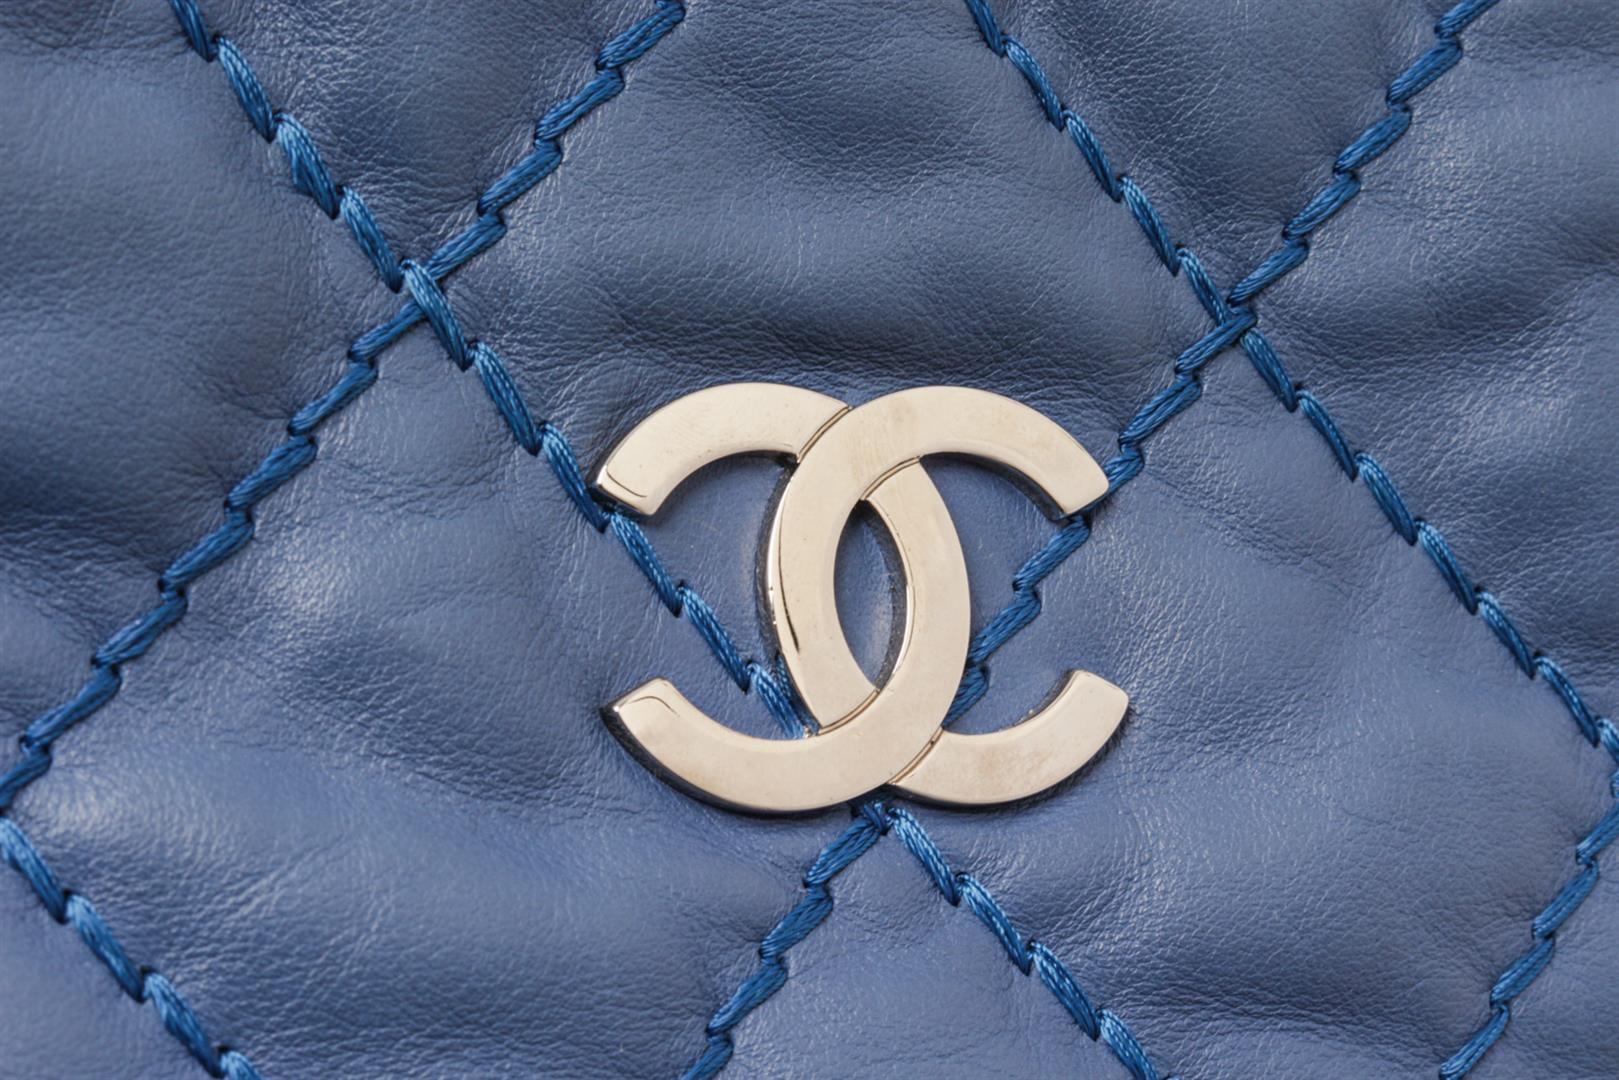 Chanel Navy Blue Quilted Leather Boy Camera Shoulder Bag